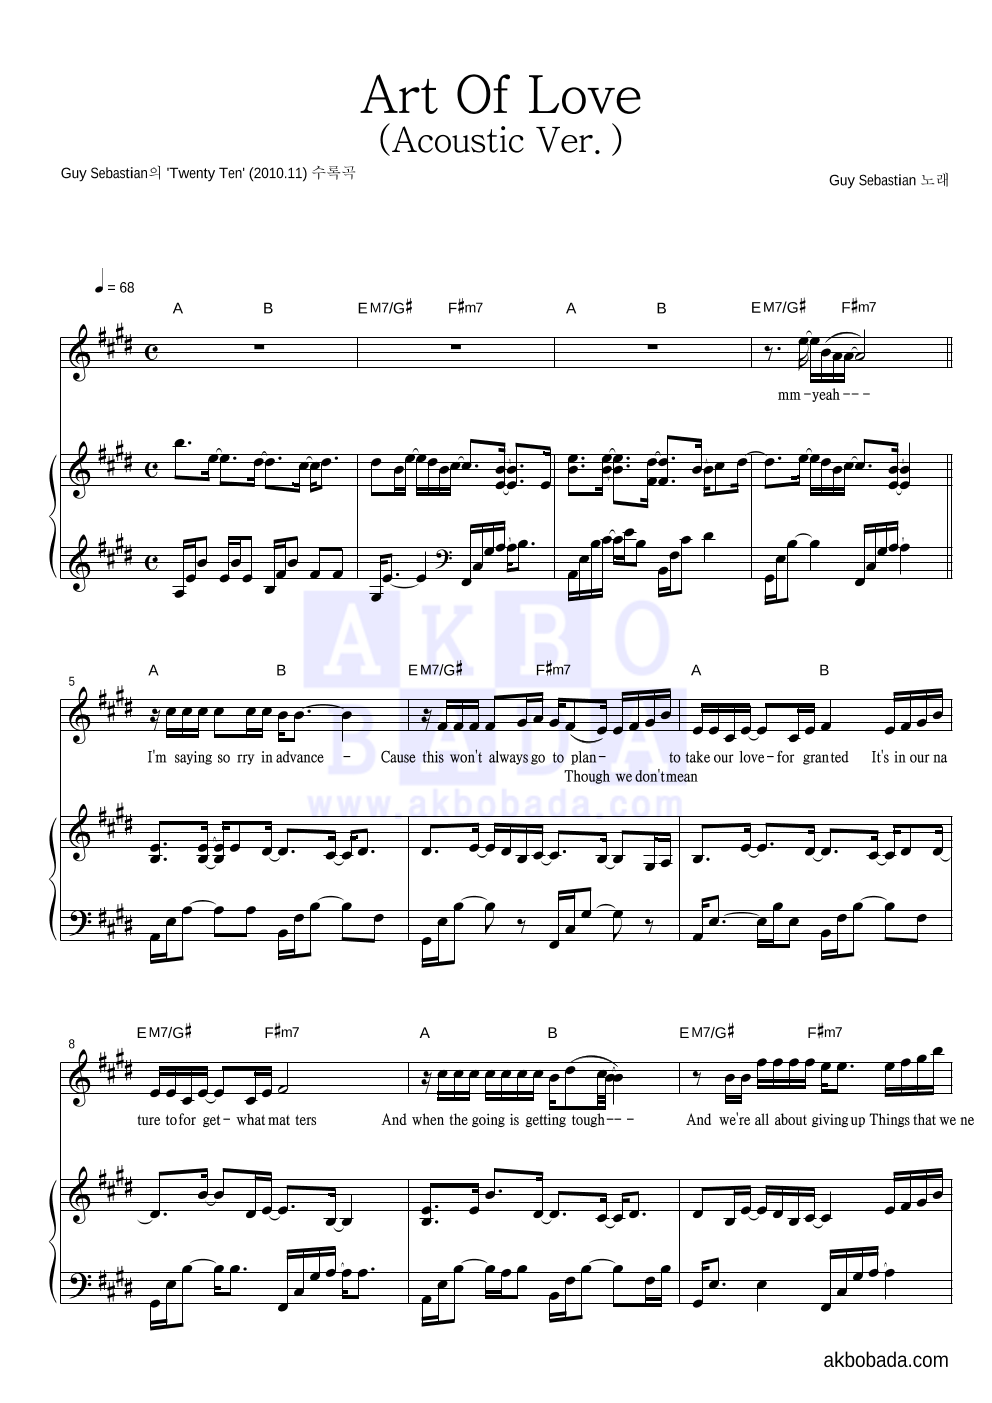 Guy Sebastian - Art Of Love (Acoustic ver.) 피아노 3단 악보 